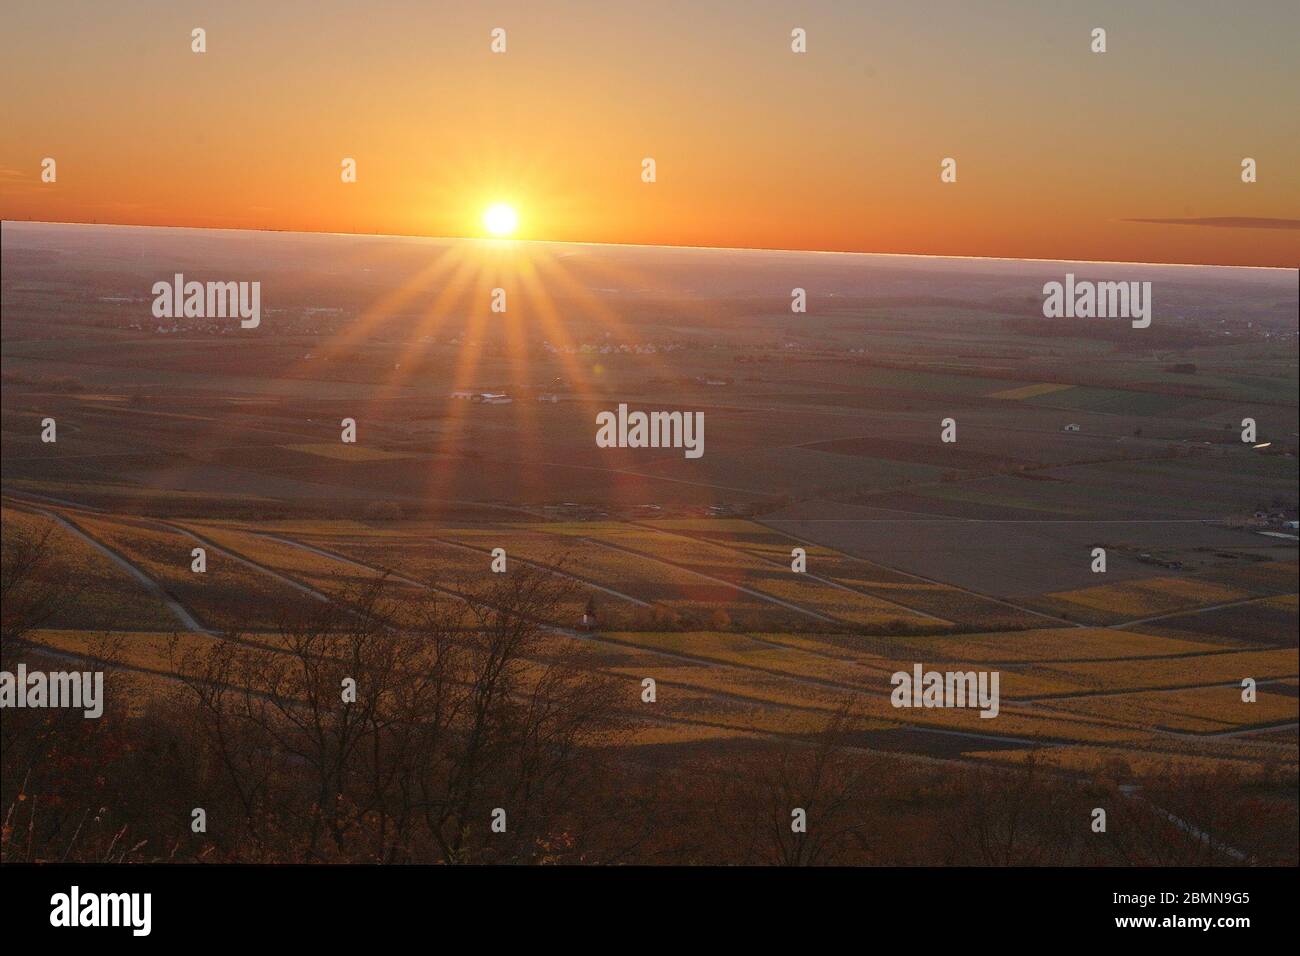 Sonnenuntergang über den Weinbergen Stock Photo